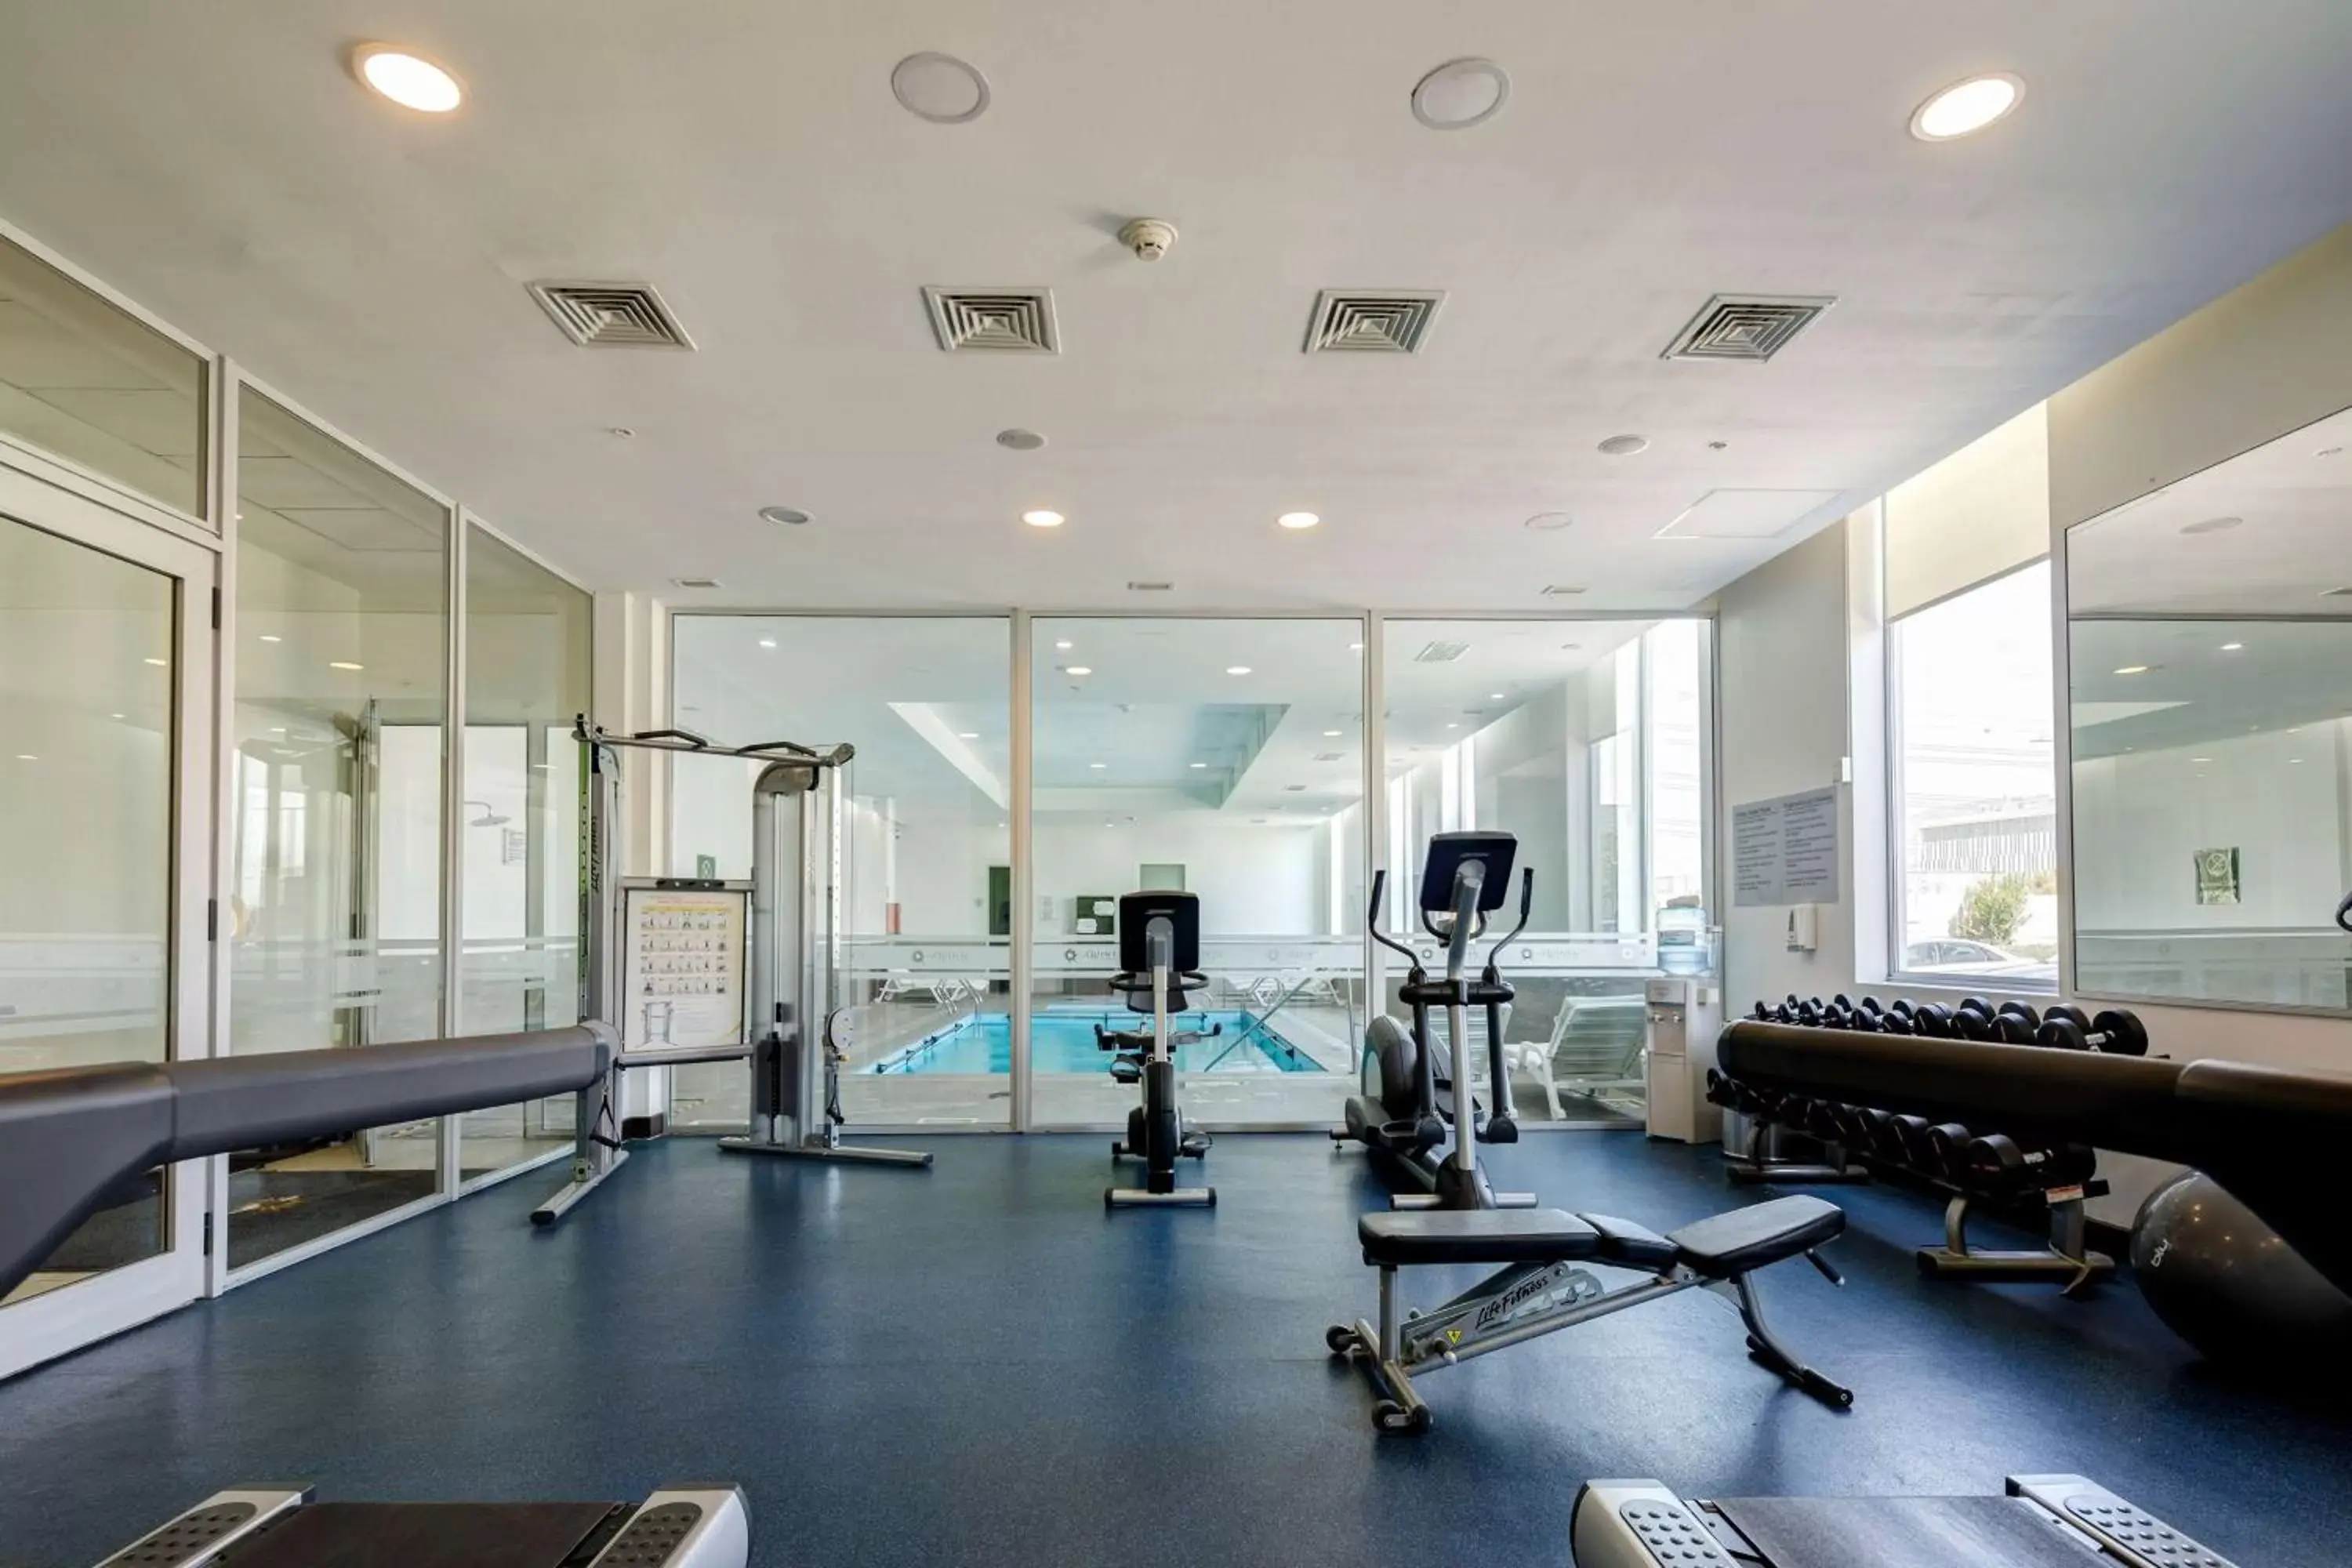 Fitness centre/facilities, Fitness Center/Facilities in La Quinta by Wyndham Santiago Aeropuerto